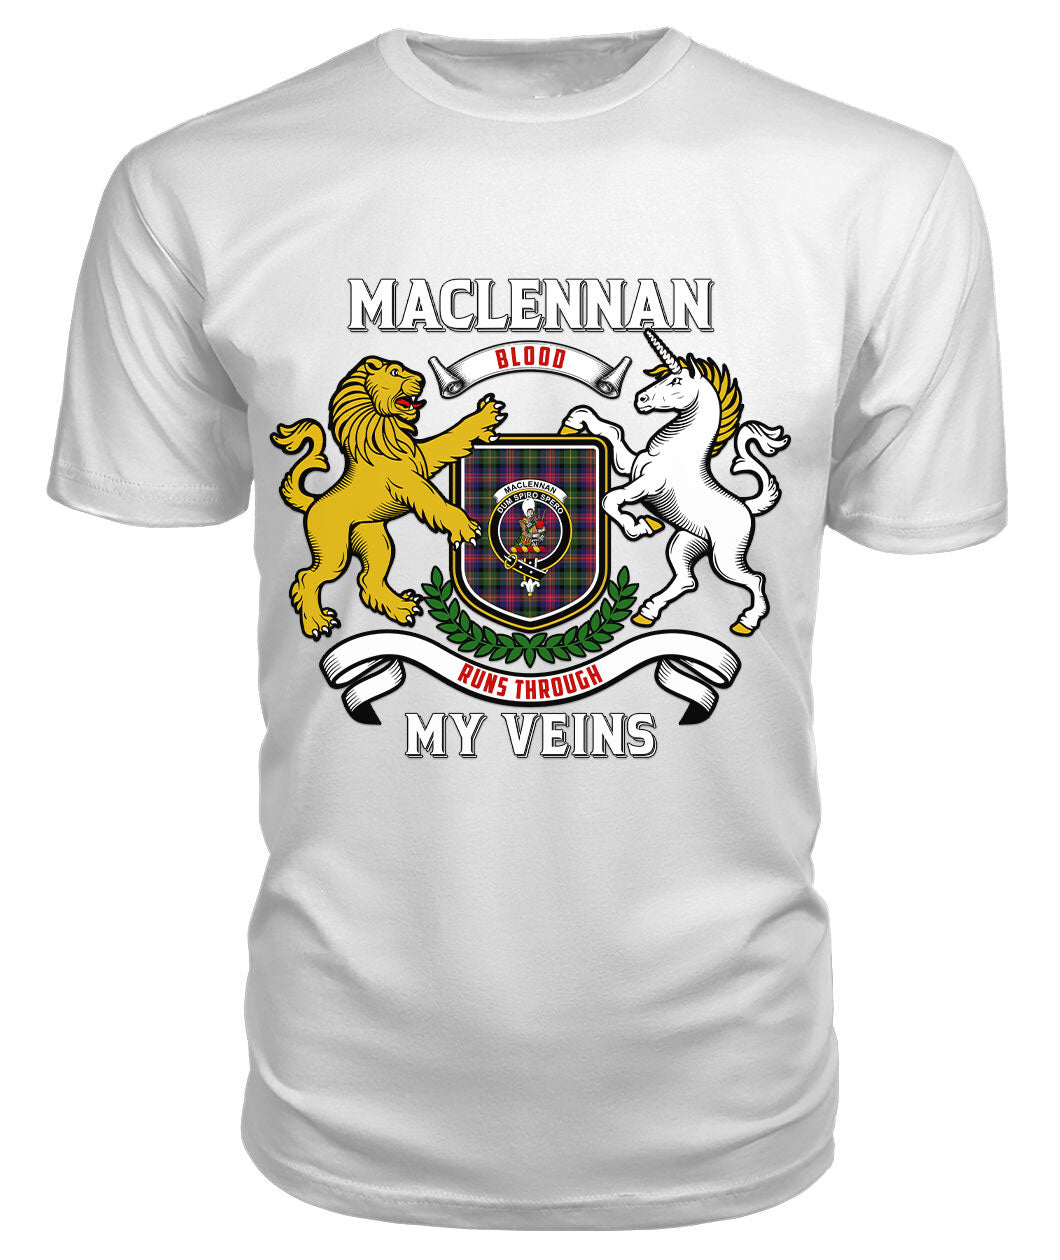 MacLennan Modern Tartan Crest 2D T-shirt - Blood Runs Through My Veins Style